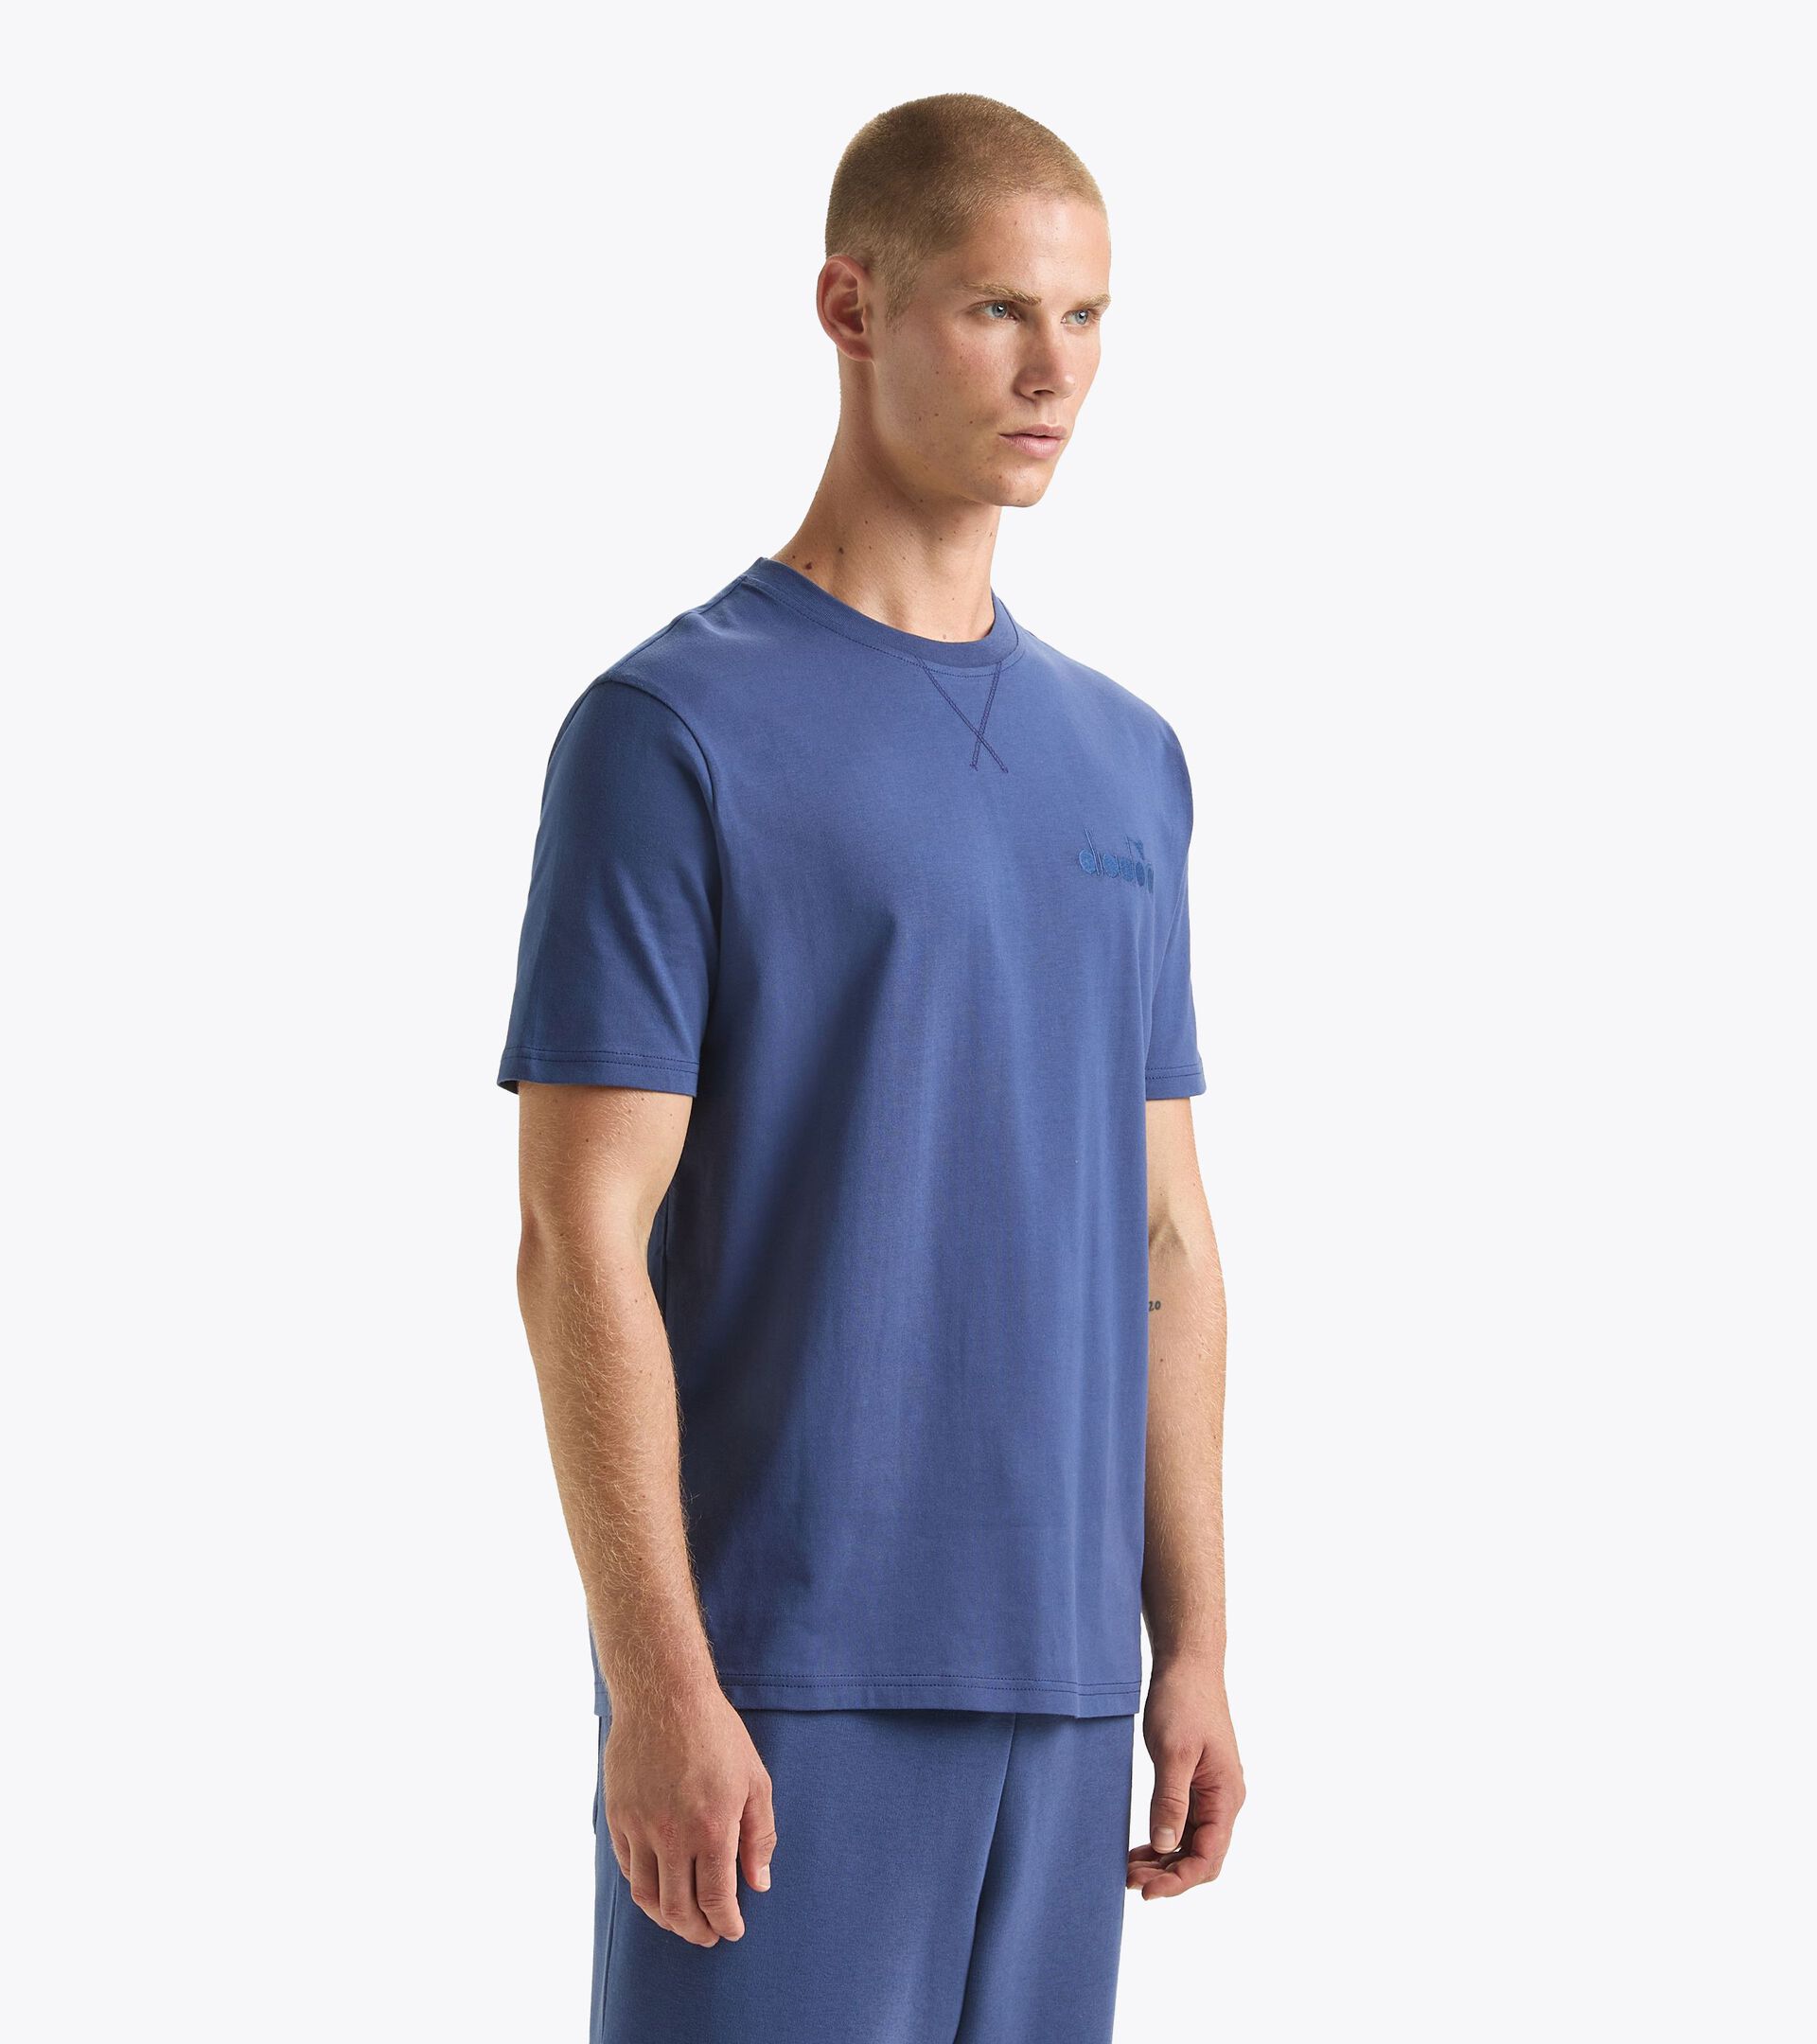 T-shirt - Gender Neutral T-SHIRT SS ATHL. LOGO BLU OCEANA - Diadora